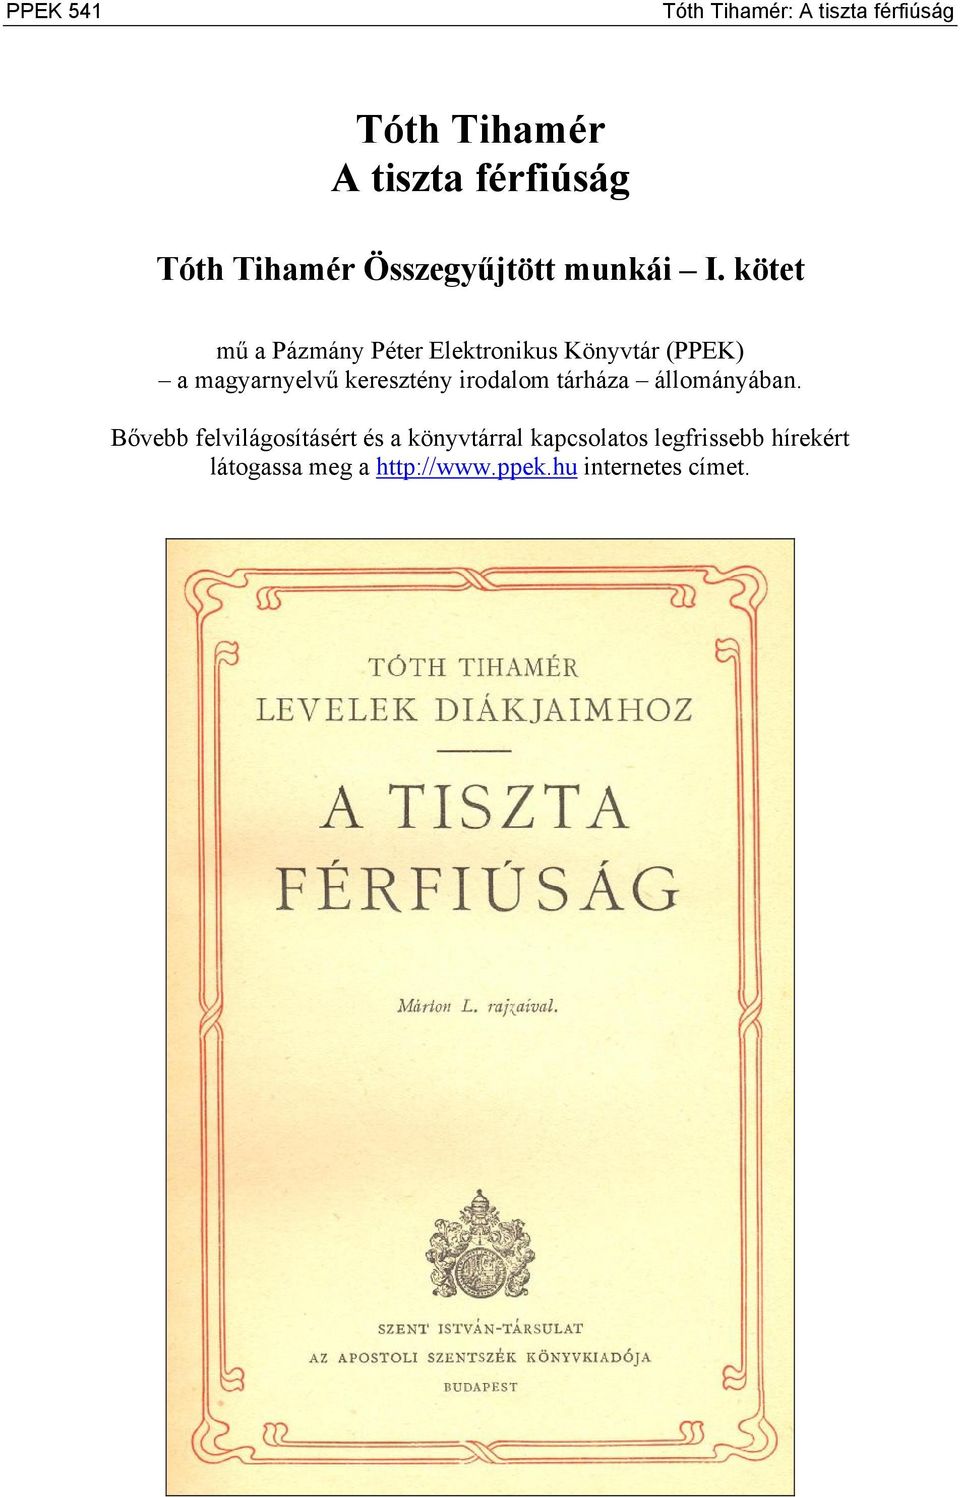 kötet mű a Pázmány Péter Elektronikus Könyvtár (PPEK) a magyarnyelvű keresztény